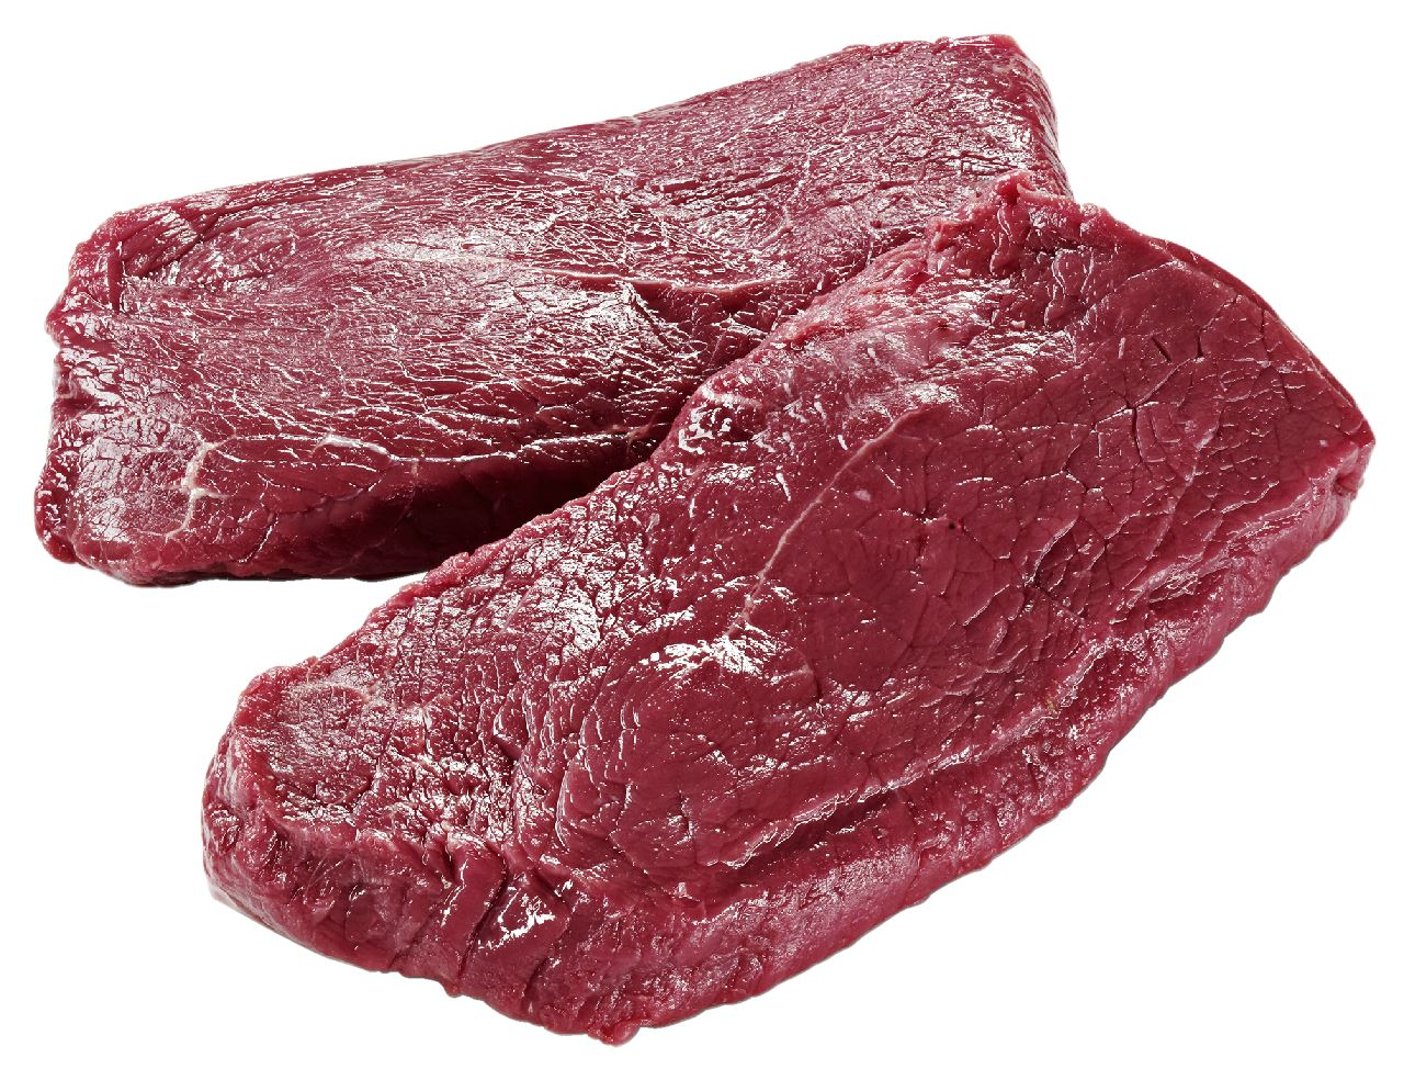 METRO Chef - Argentinische Rinder-Hüftsteaks, 12 Stück á 200-210 g, gekühlt - ca. 2,4 kg